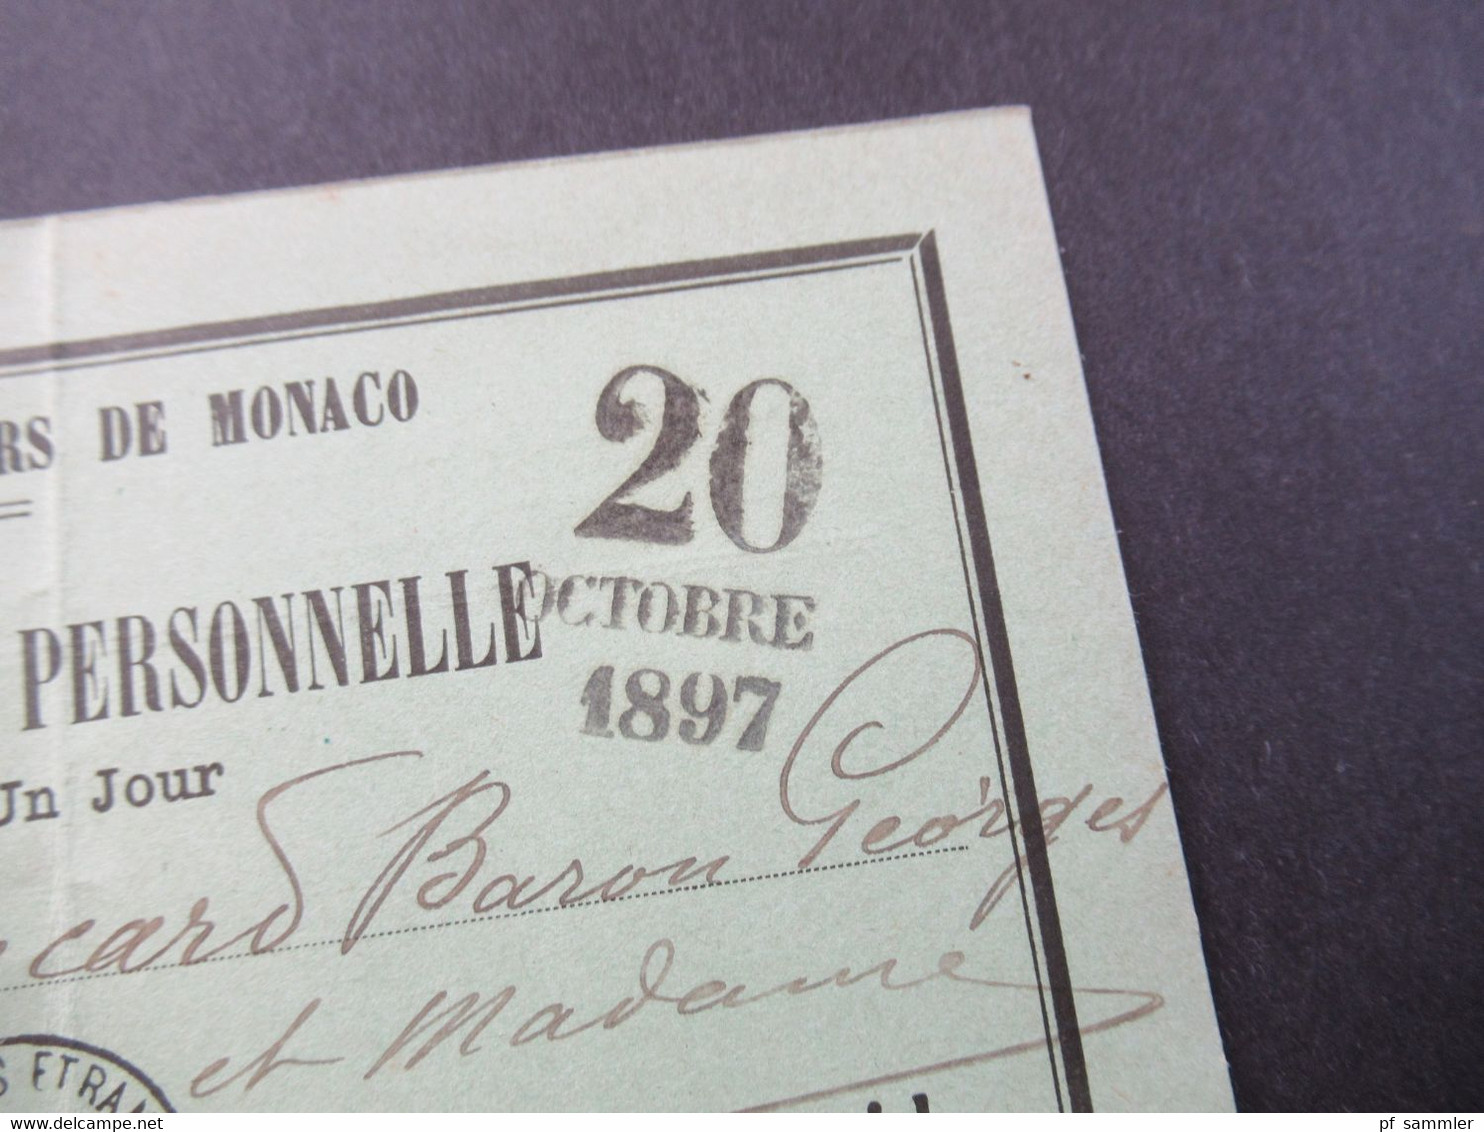 Monaco 20.10.1897 Carte D'Admission Personelle Cercle Des Etrangers De Monaco Valabe Pour Un Jour - Storia Postale